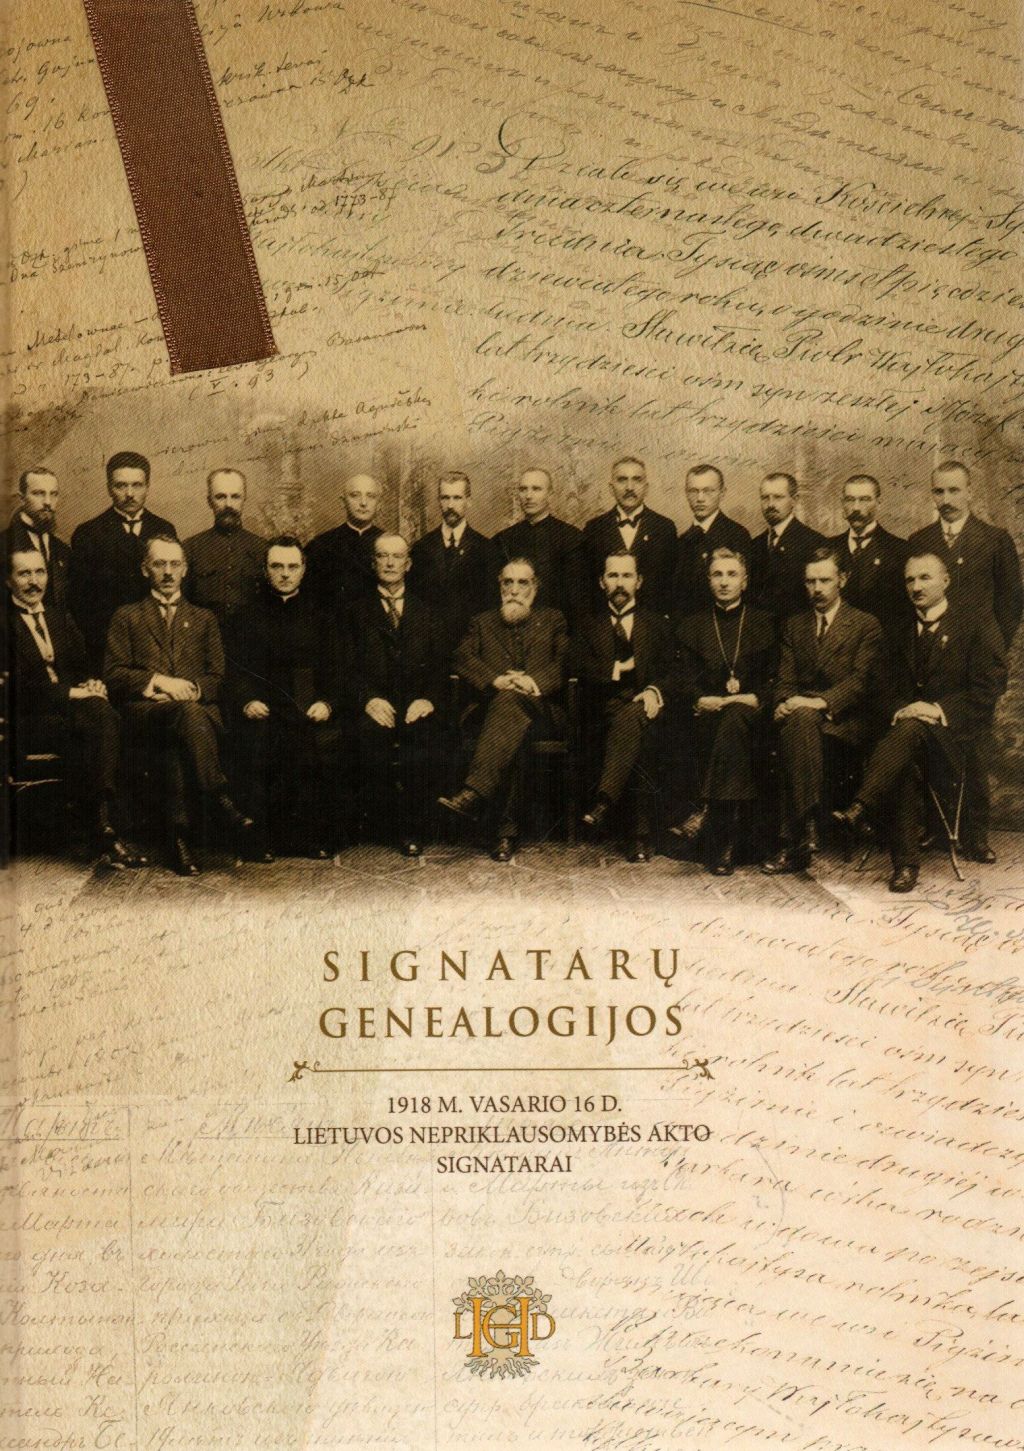 Signatarų genealogijos. Lietuvos 1918 m. vasario 16-osios Nepriklausomybės akto signatarai“